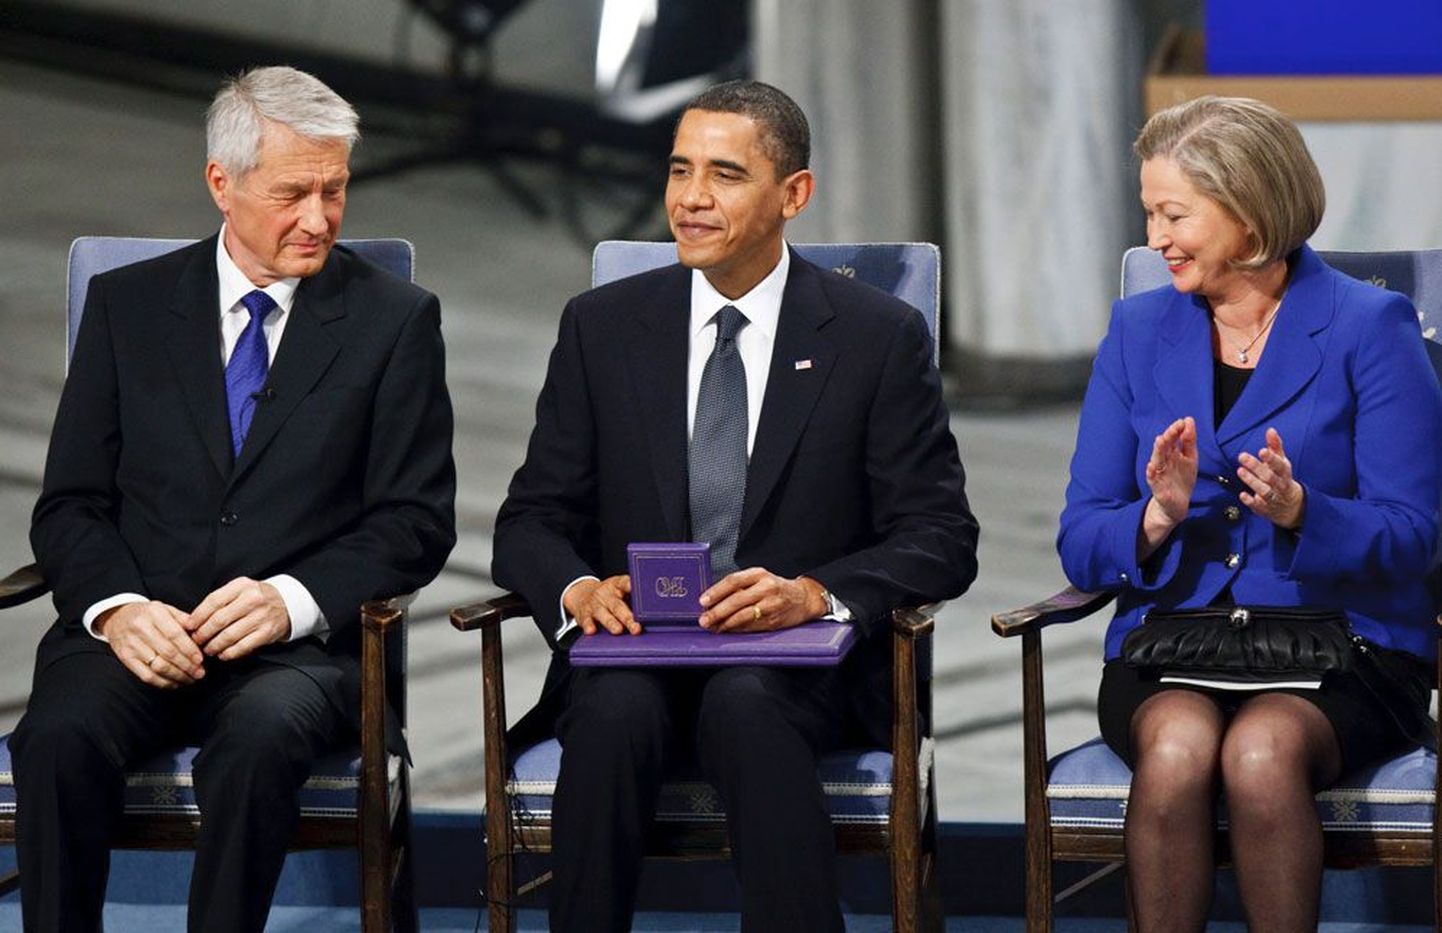 Oma aumedali ja diplomi kätte saanud Barack Obama istub rahulolevana Nobeli komitee esimehe Thorbjörn Jaglandi kõrval.